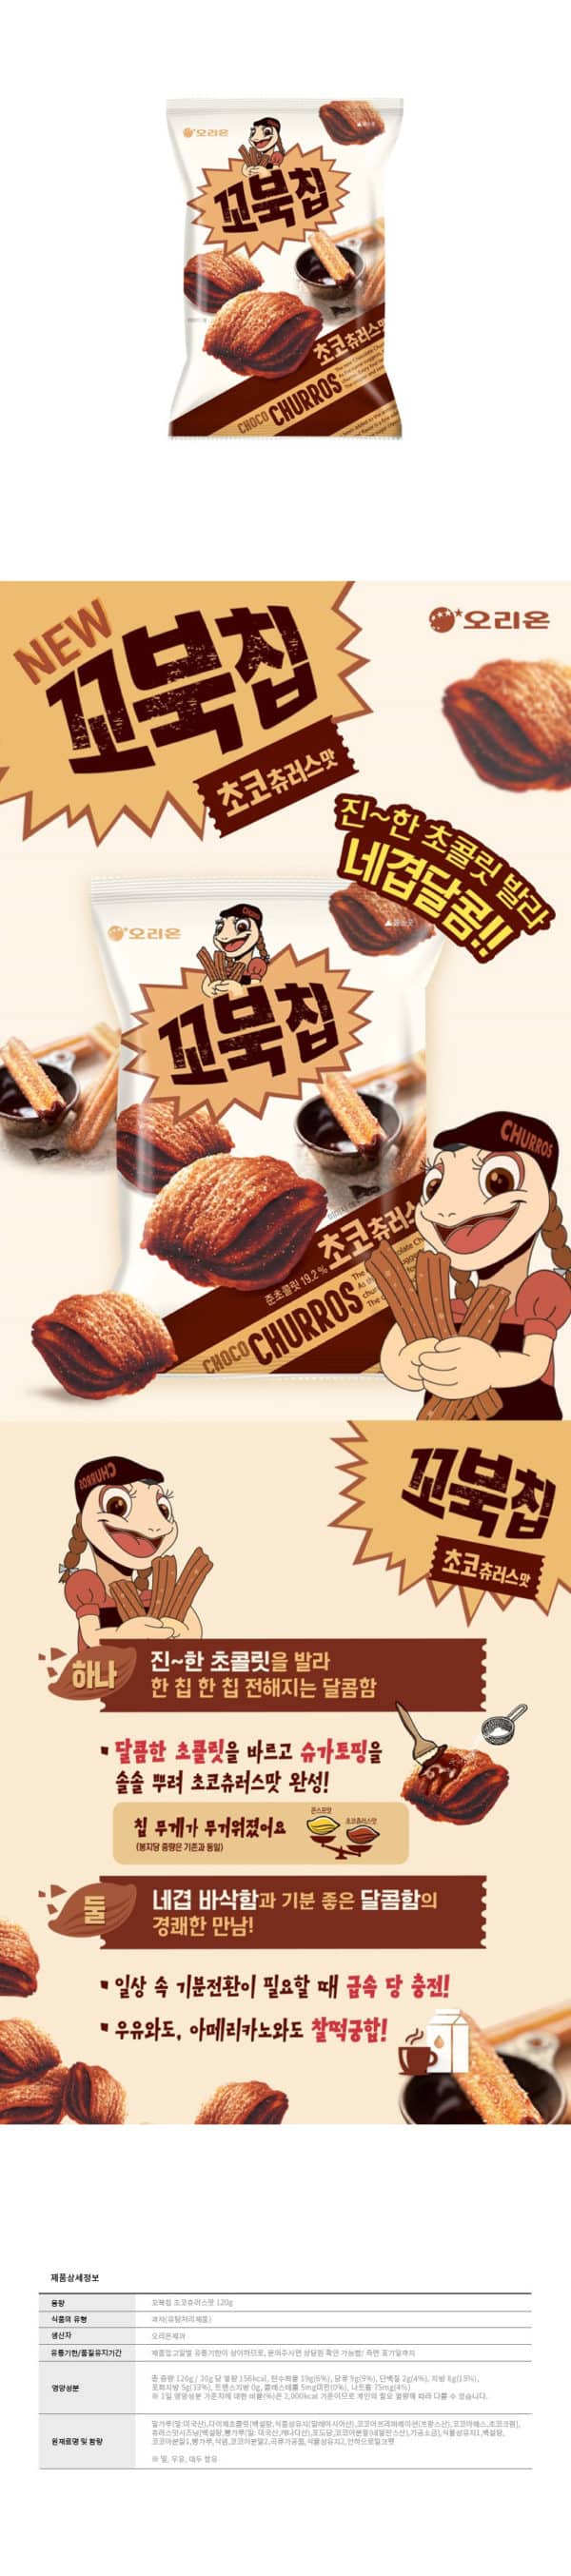 韓國食品-[Orion] Turtle-shaped Snack [Choco Churros] 120g